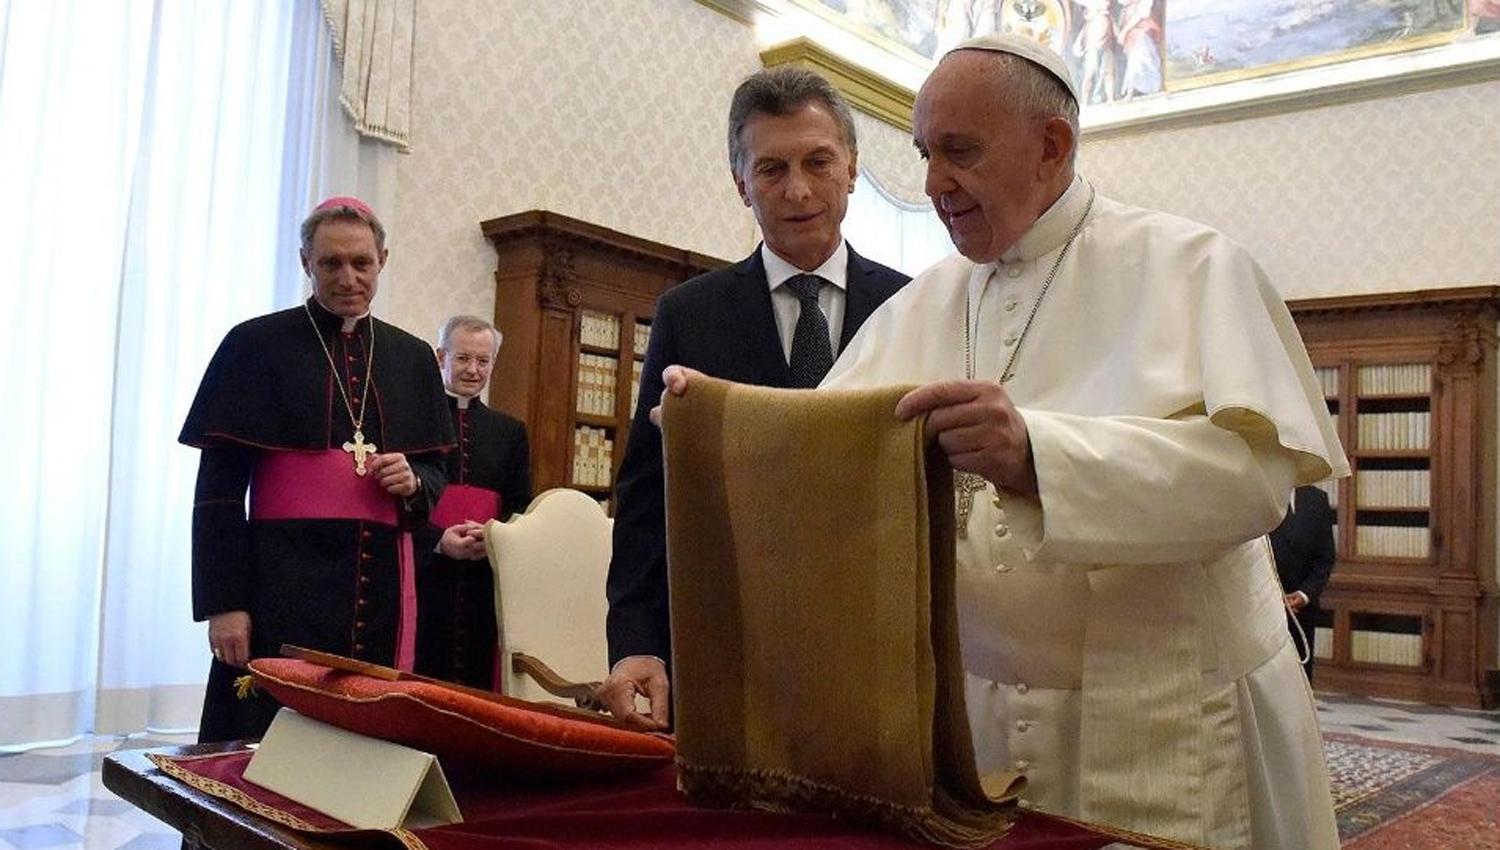 VISITA PRESIDENCIAL. La última visita del presidente al Papa. FOTO TOMADA DE BAENEGOCIOS.COM